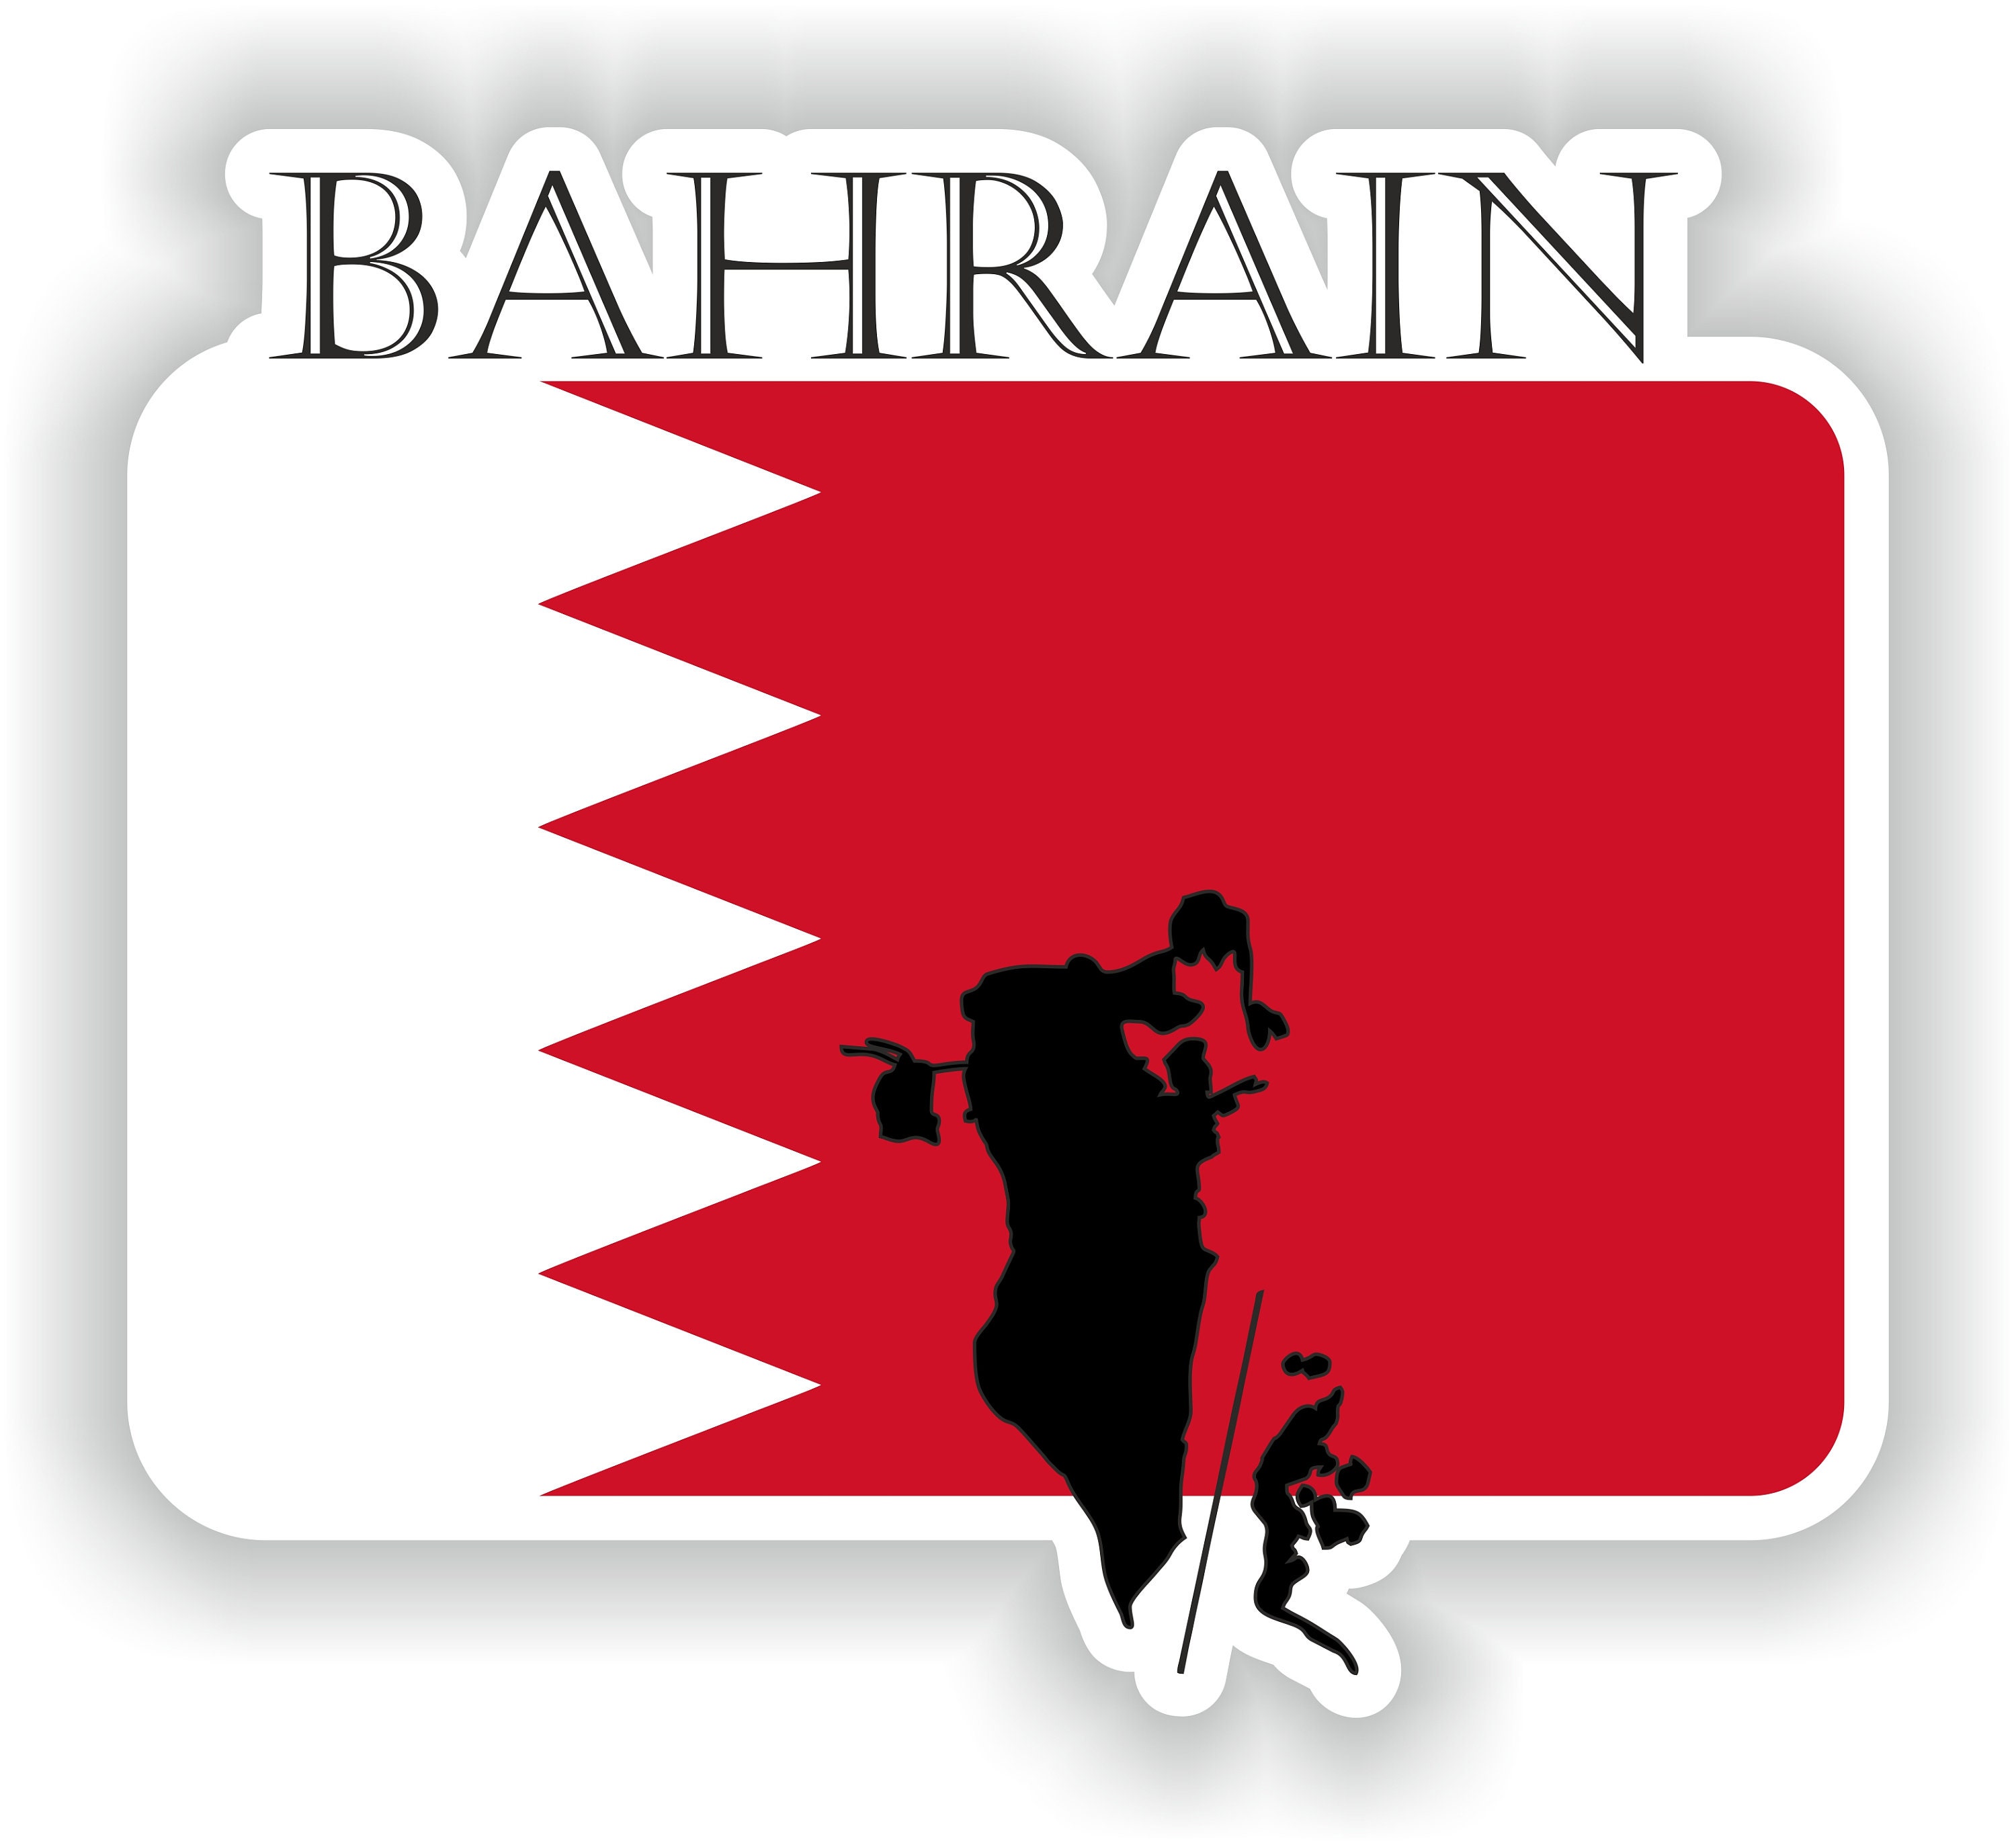 Bahrain Sticker Flag MF for Laptop Book Fridge Guitar Motorcycle